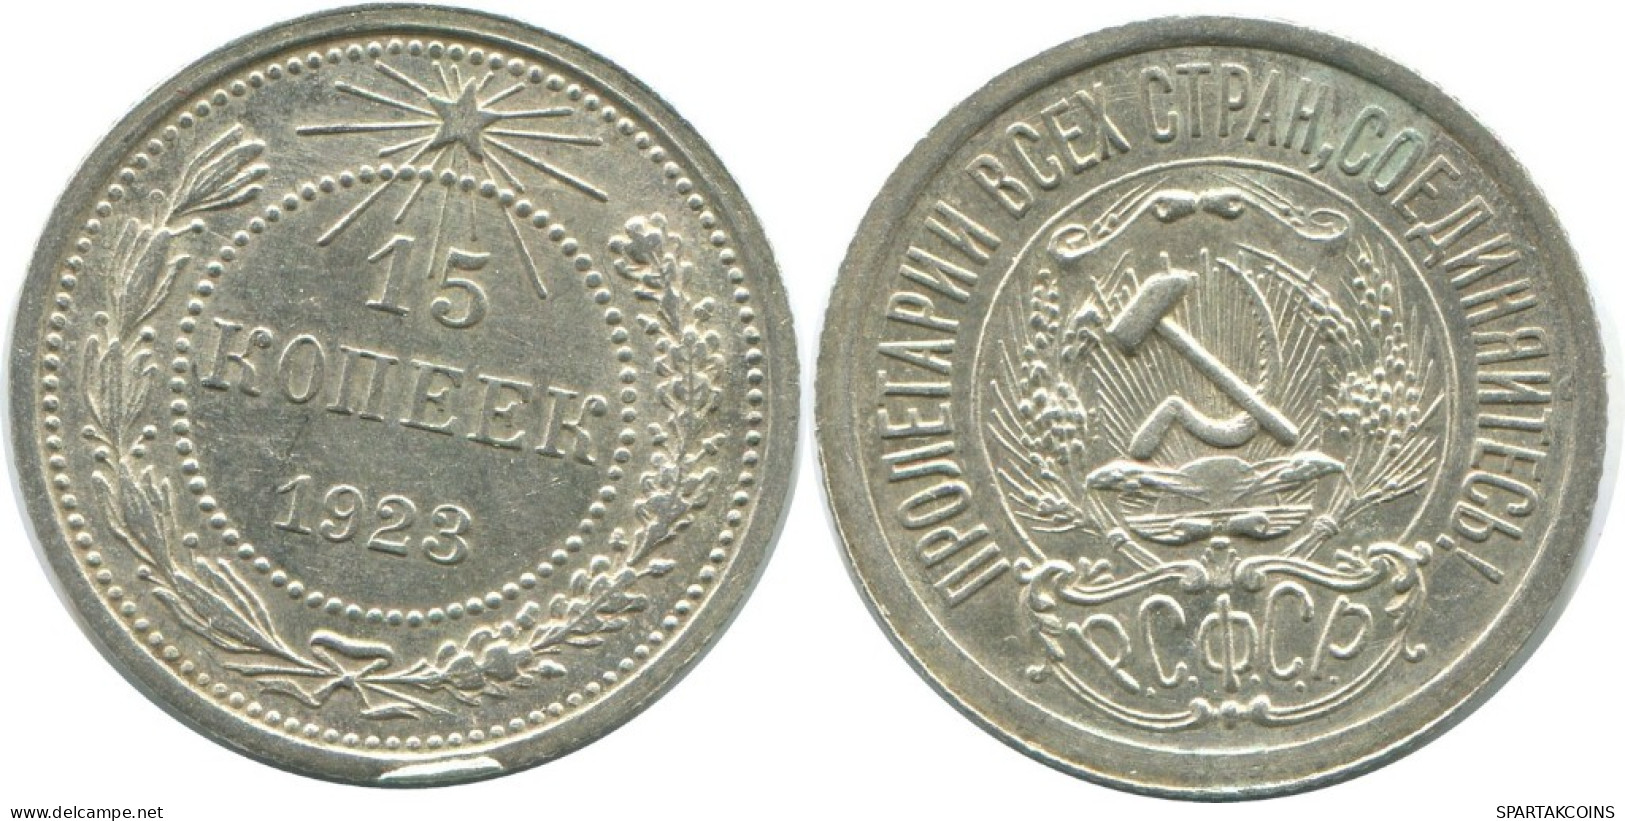 15 KOPEKS 1923 RUSSIA RSFSR SILVER Coin HIGH GRADE #AF055.4.U.A - Rusland